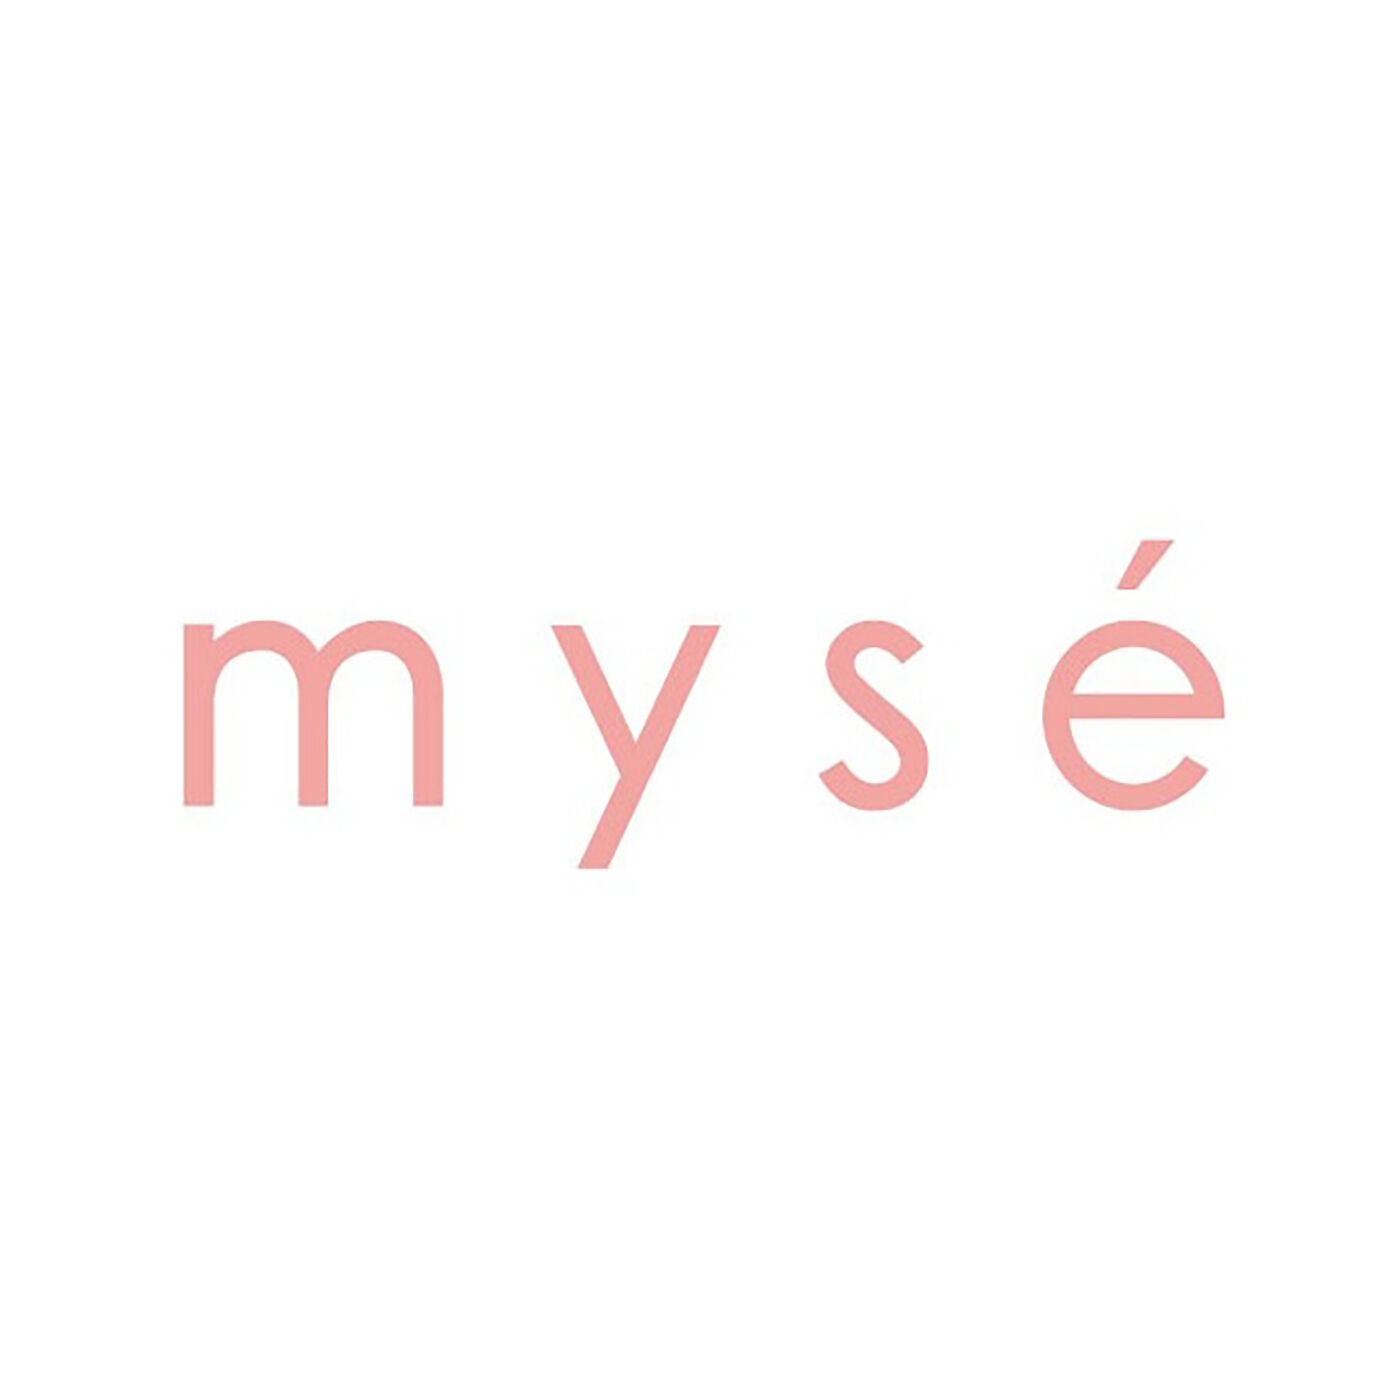 BEAUTY PROJECT|ヤーマン　ミーゼ　スカルプリフト|「My Smart Esthe」の頭文字から名付けられた「mysé (ミーゼ)」